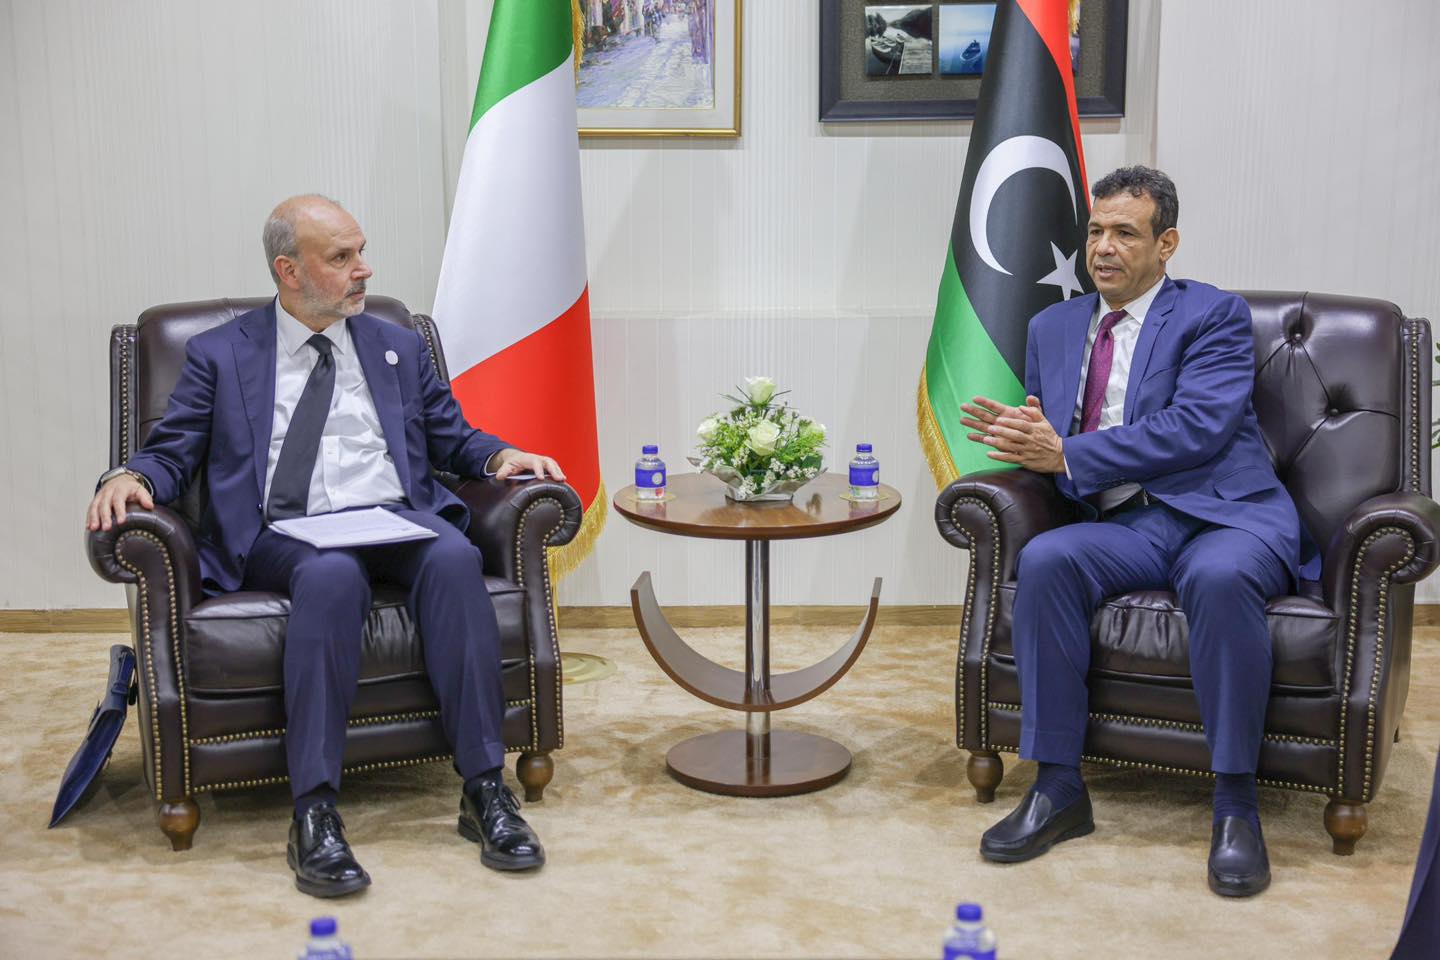 ابوجناح يناقش مع وزير الصحة الإيطالي تفعيل اتفاقيات التوأمة الموقعة سابقًا بين المراكز الطبية الليبية ونظيرتها الإيطالية.